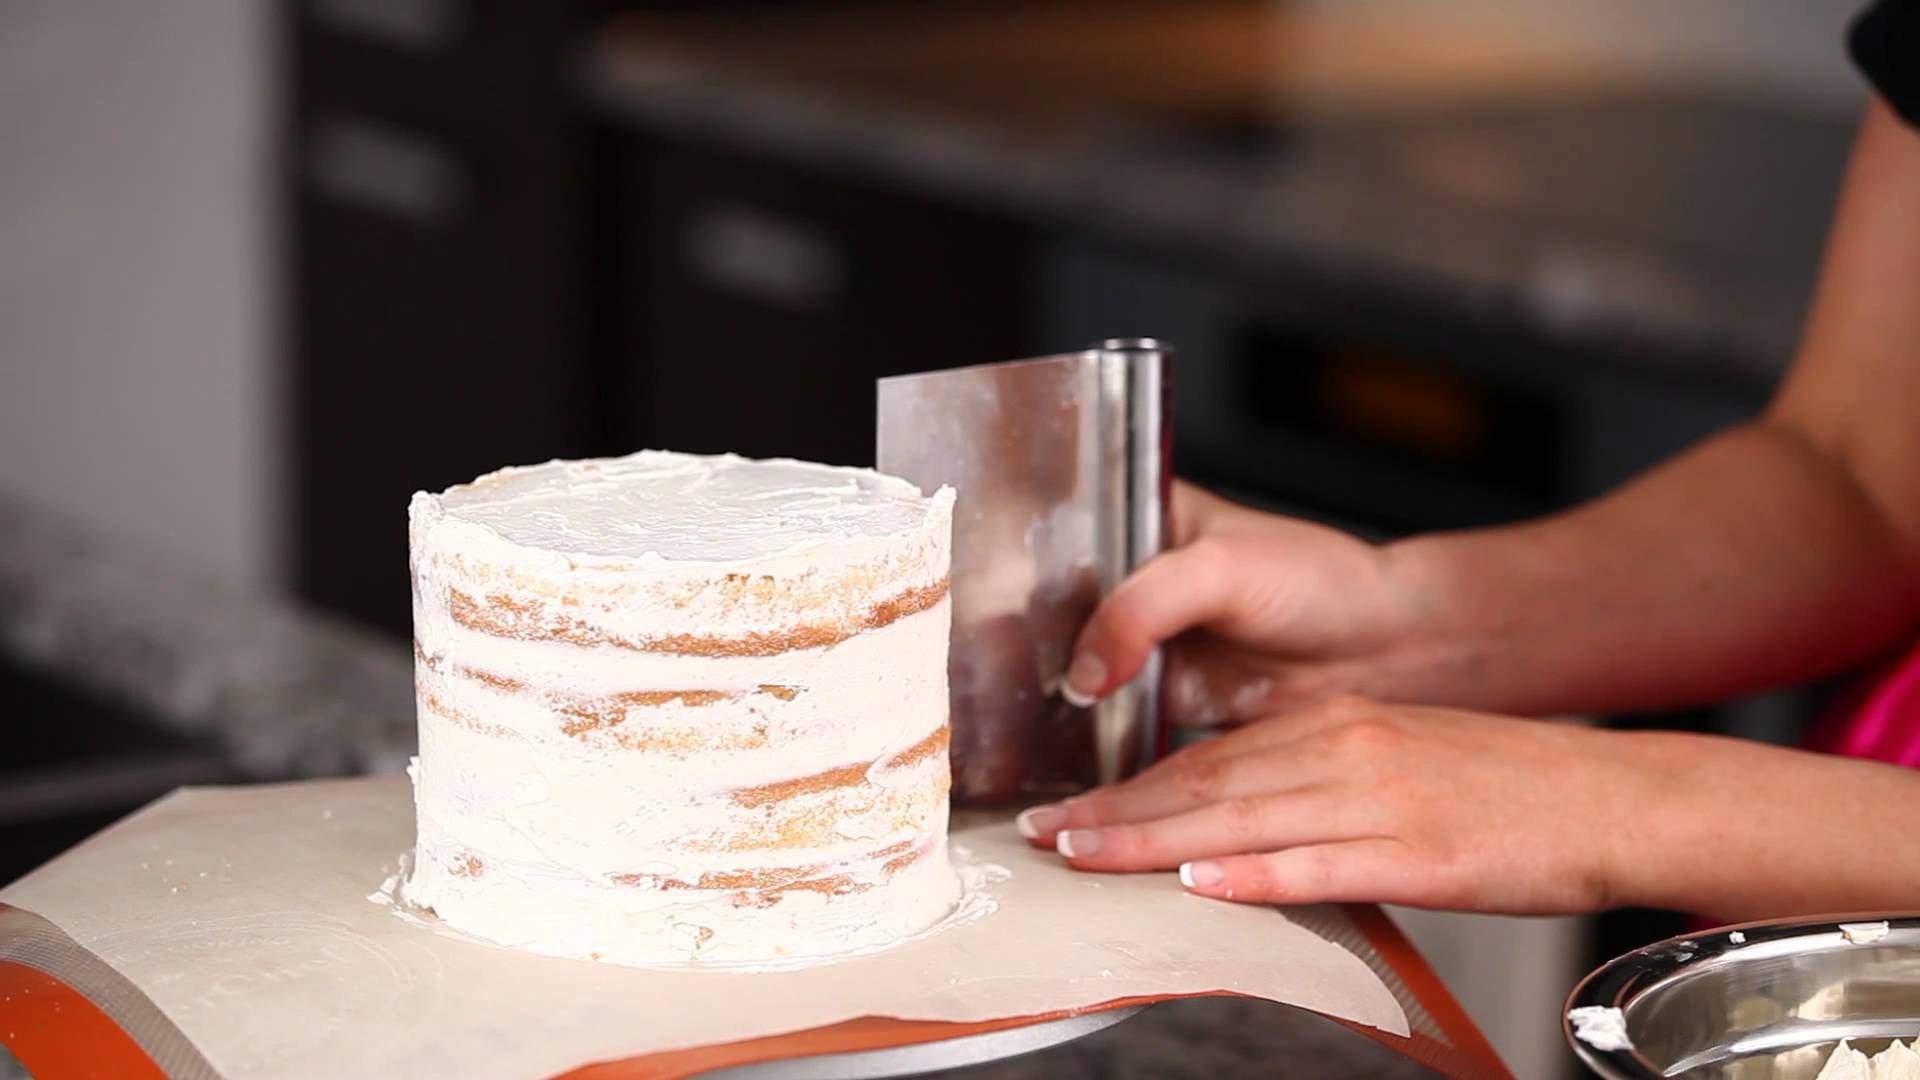 Выравнивание и украшение торта кремом чиз. Выровнять торт кремом чиз. Крем-чиз для торта для выравнивания. Торт обмазанный кремом. Выравниватель крема на торте.